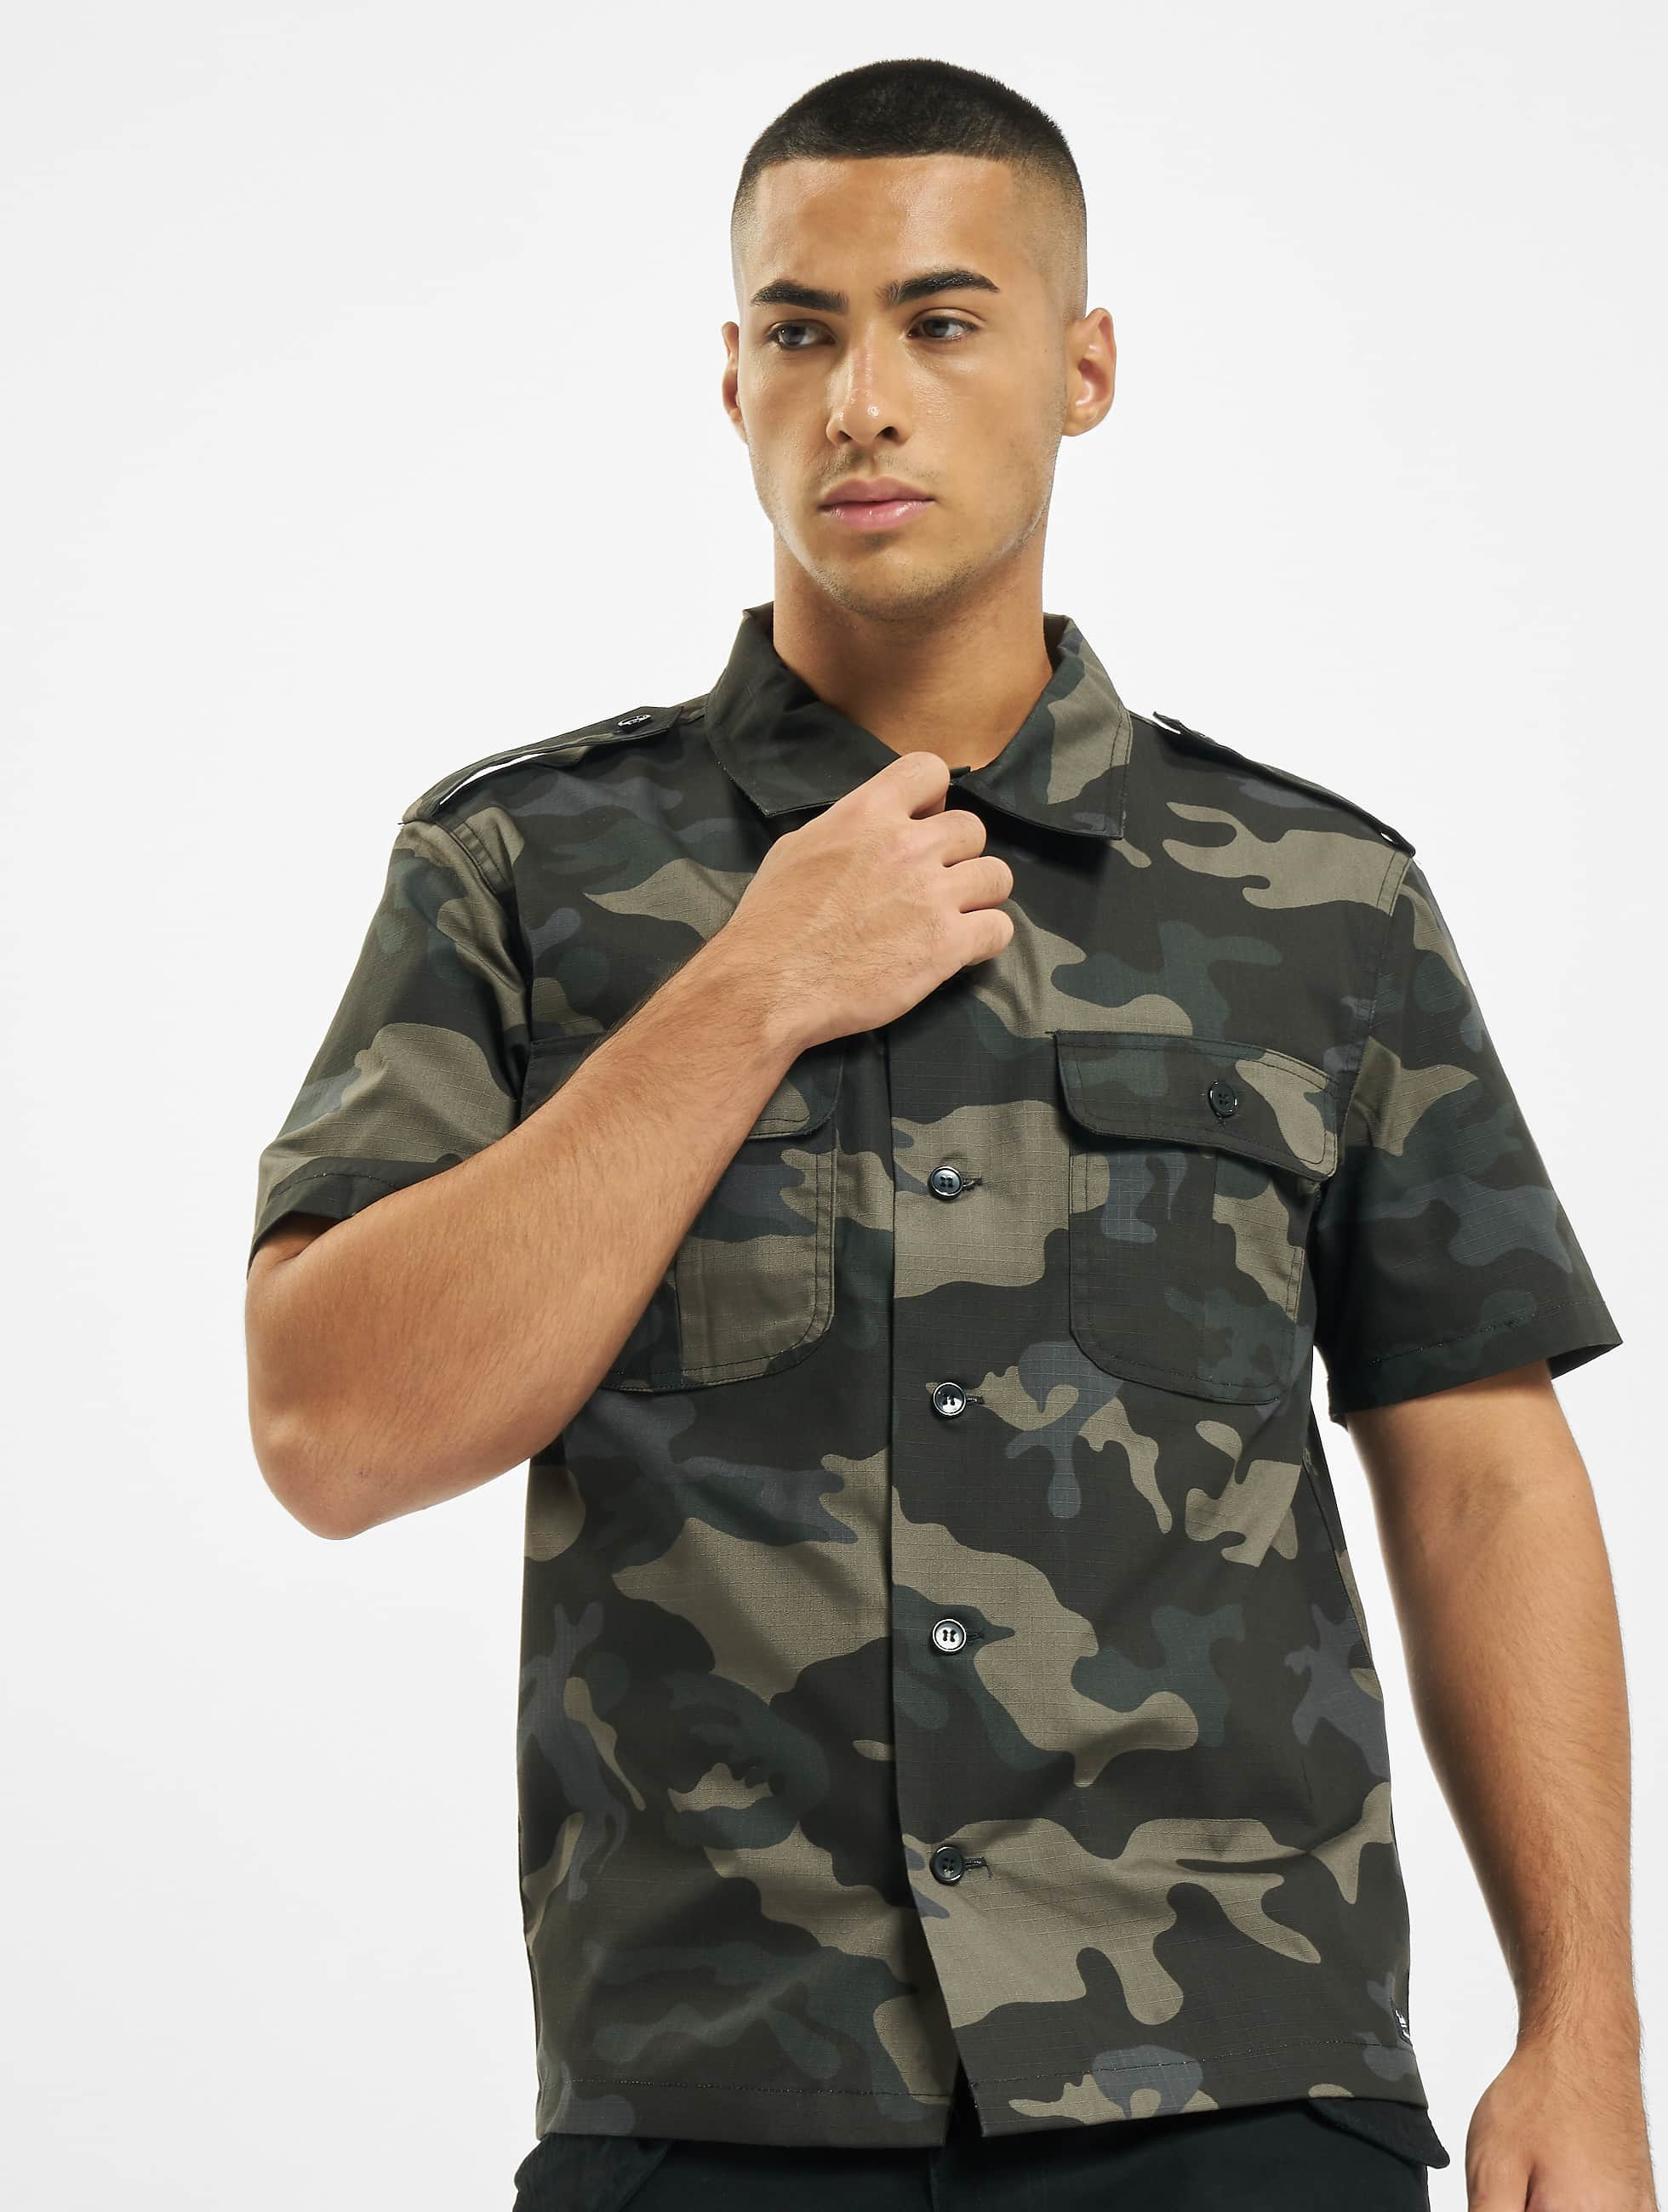 opener Het begin Recensent Brandit bovenstuk / overhemd US Ripstop in camouflage 780026